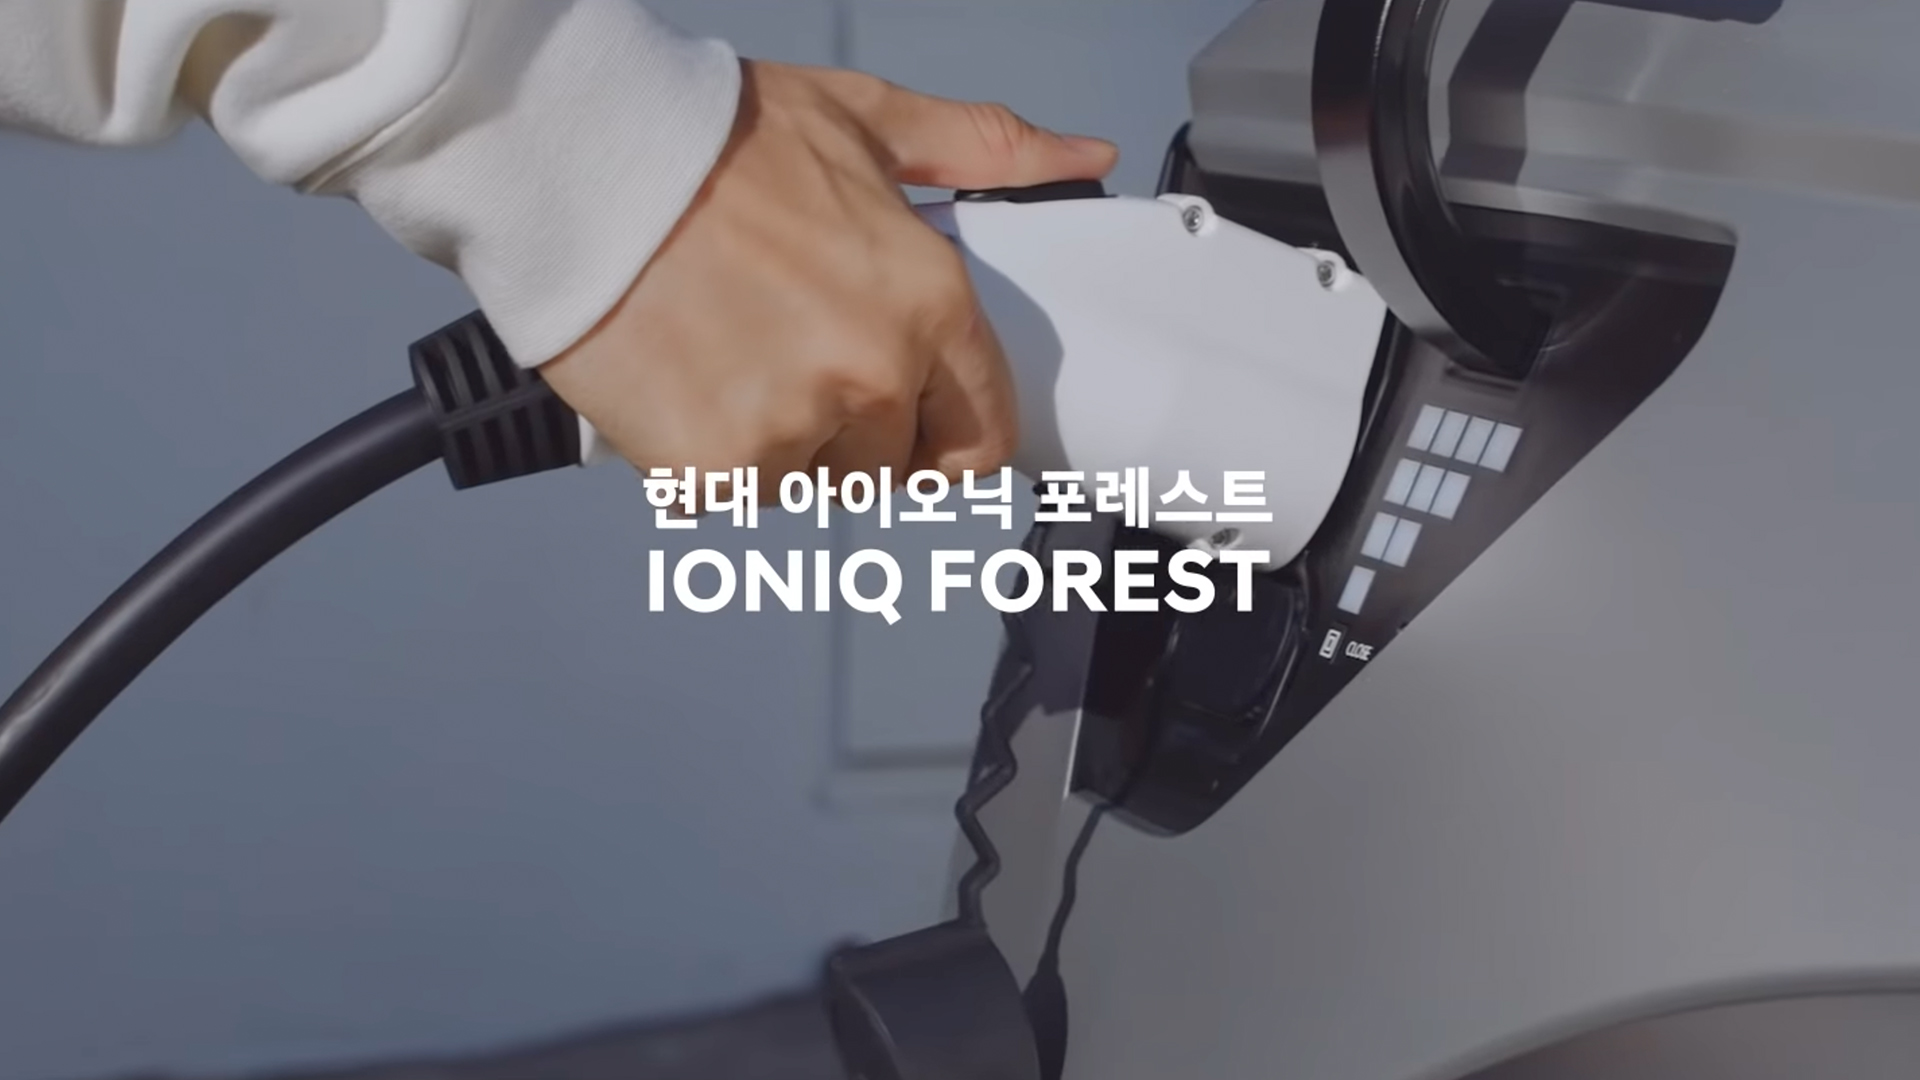 2018 Ioniq forest in the Incheon metropolitan area